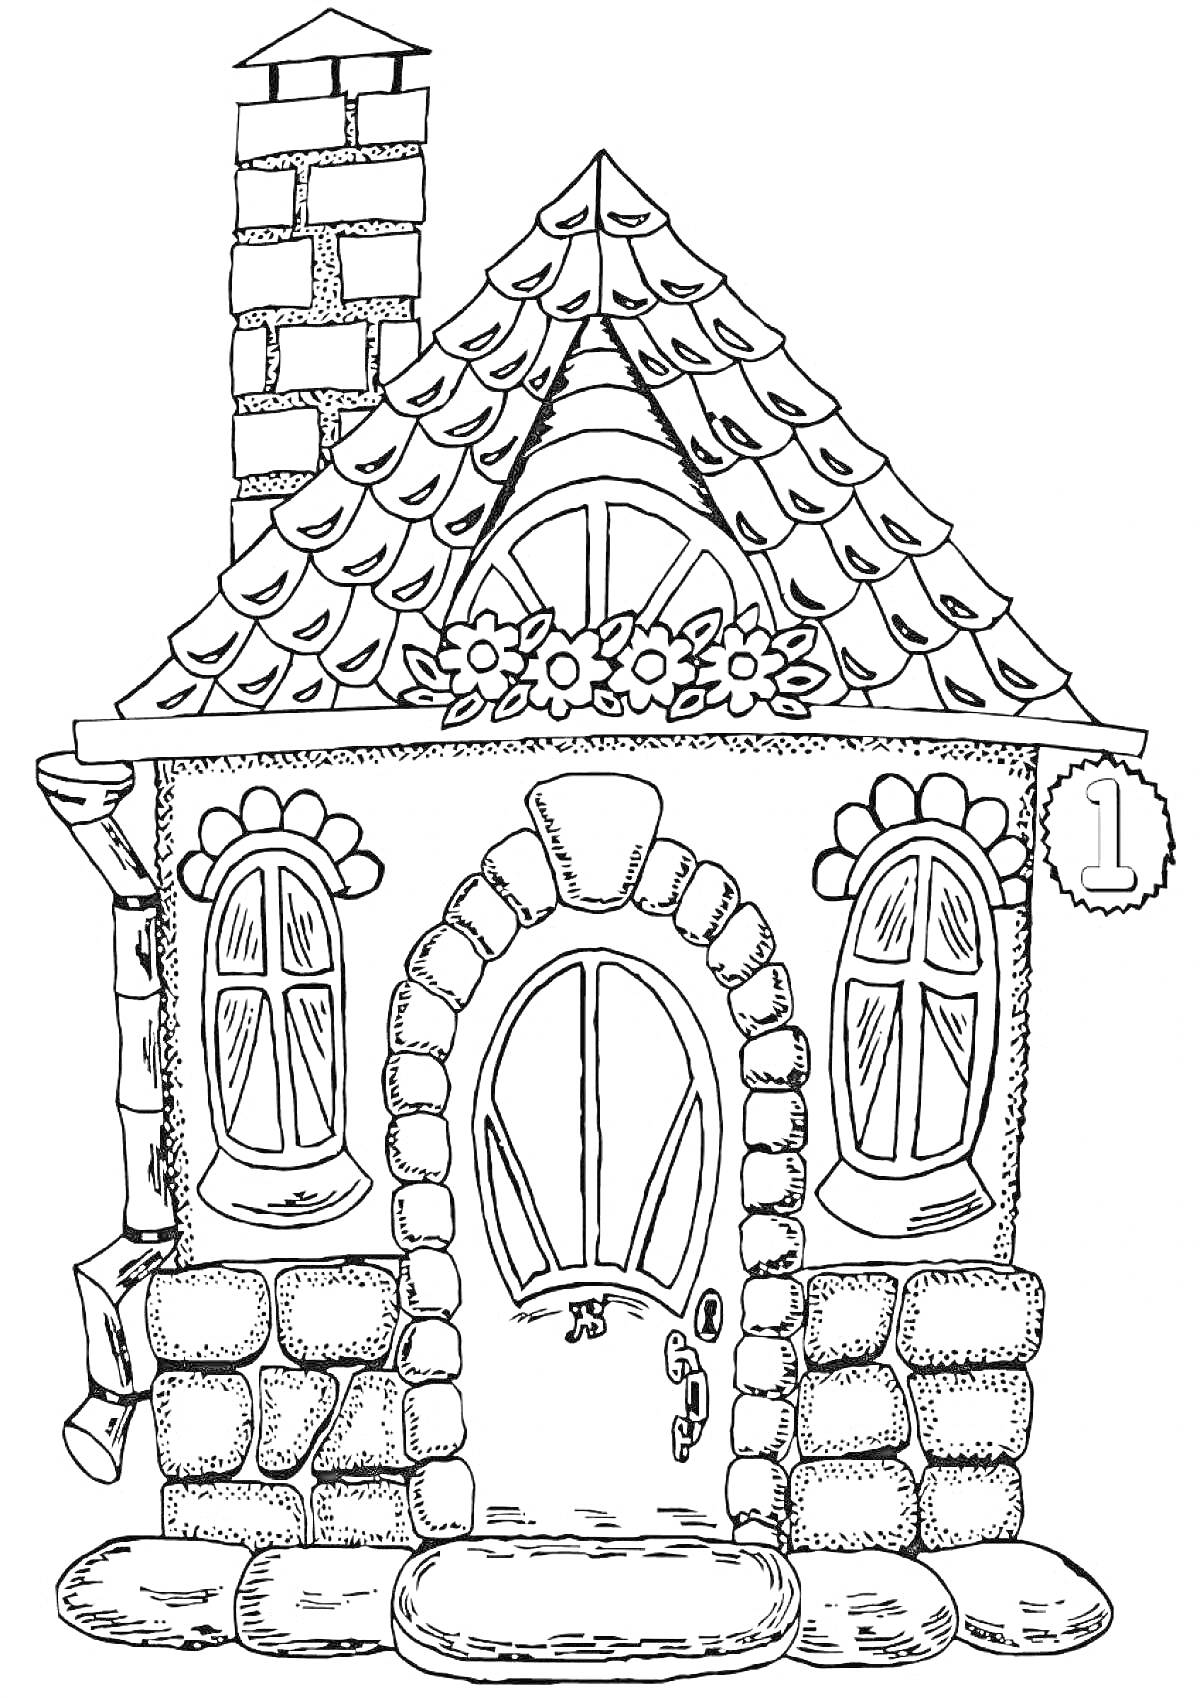 Домик с кирпичным дымоходом, черепичной крышей, цветами на окне и дверью с номером один